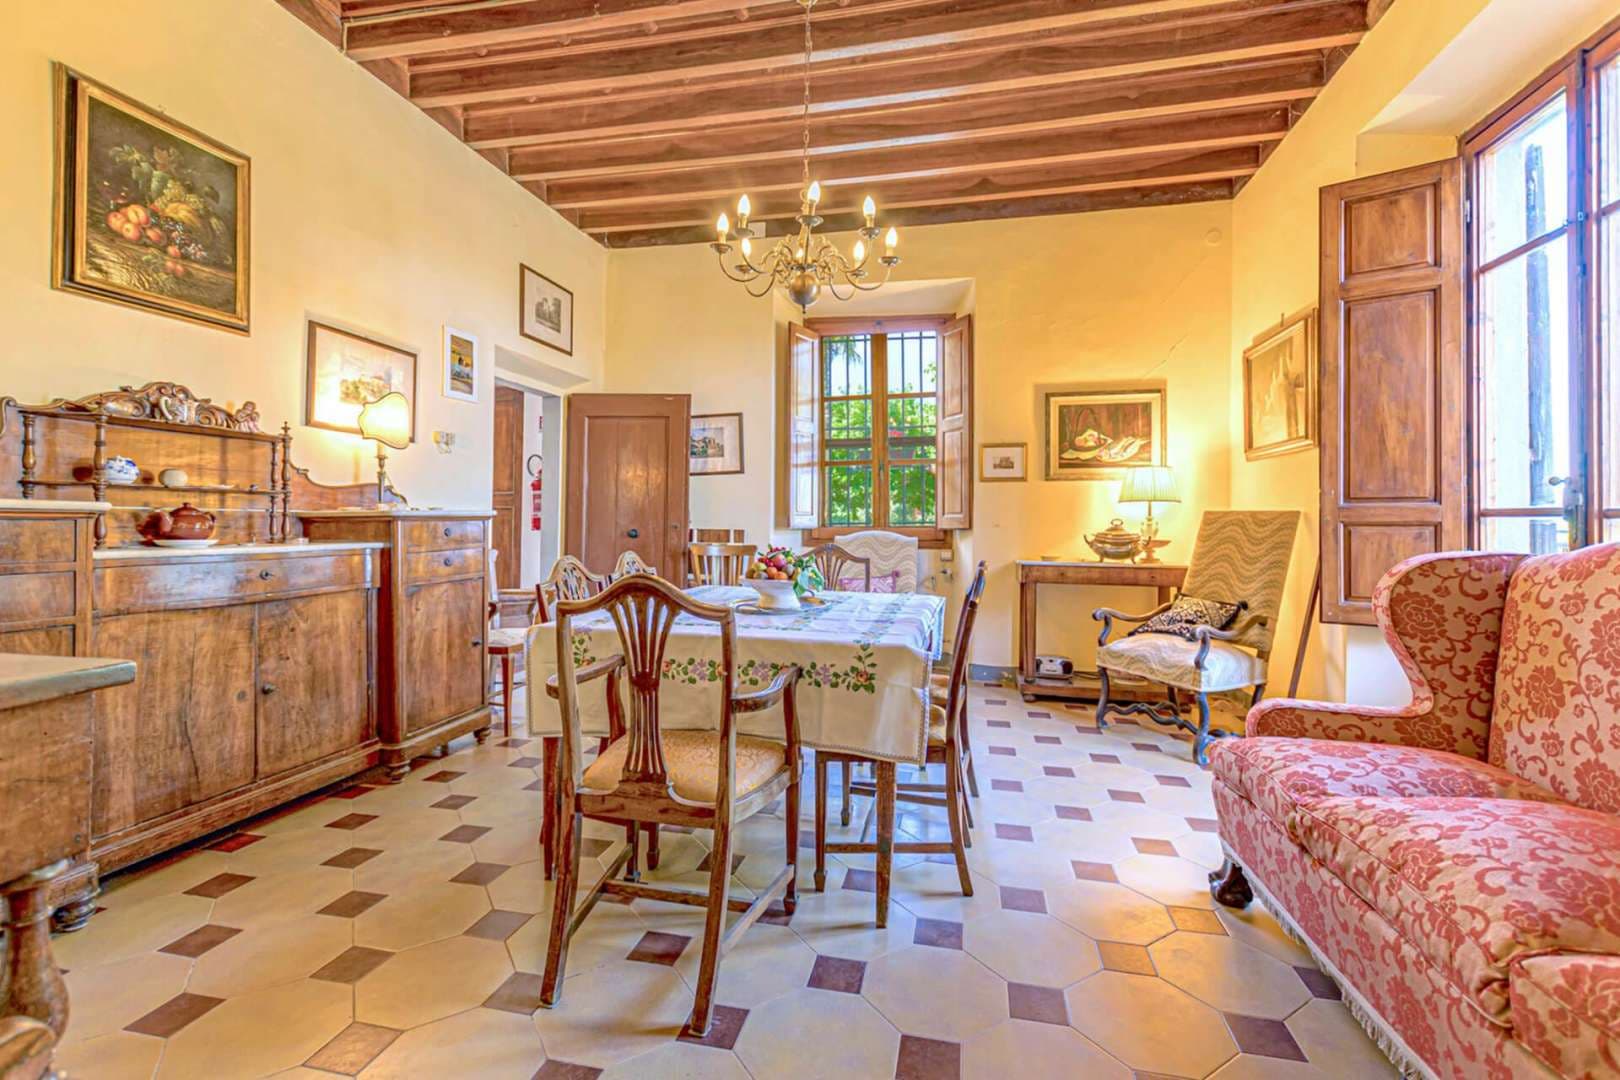 5 Bedroom Villa For Sale Antico Borgo Chianti Classico Lp04993 9abc1e358df2800.jpg